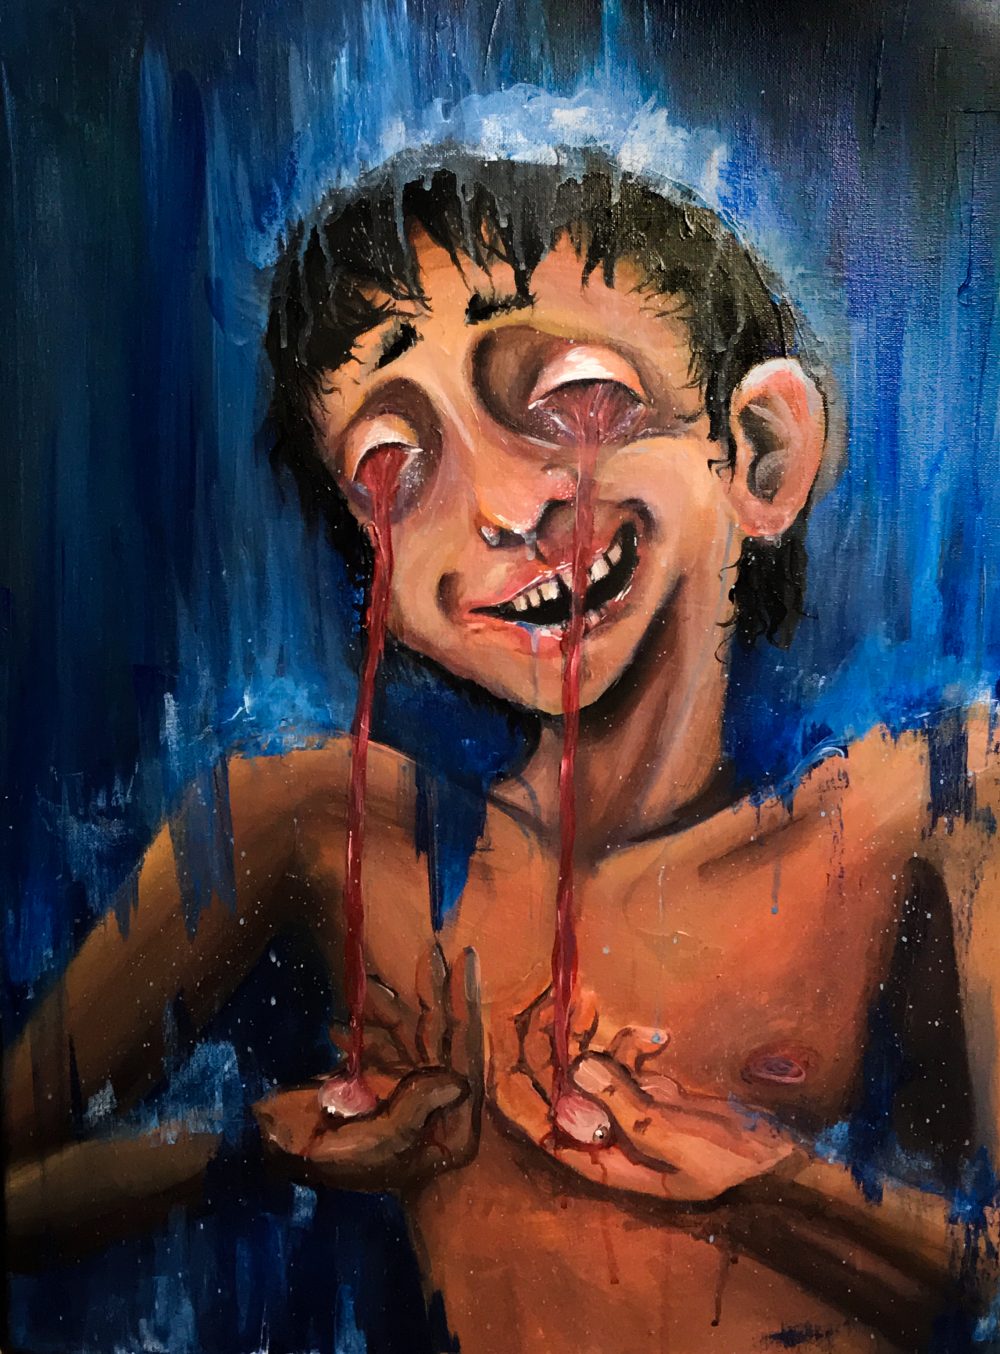 Mitchel Arndt, Skipping Mind, 2020, acrylic paint on canvas, 24" x 18"